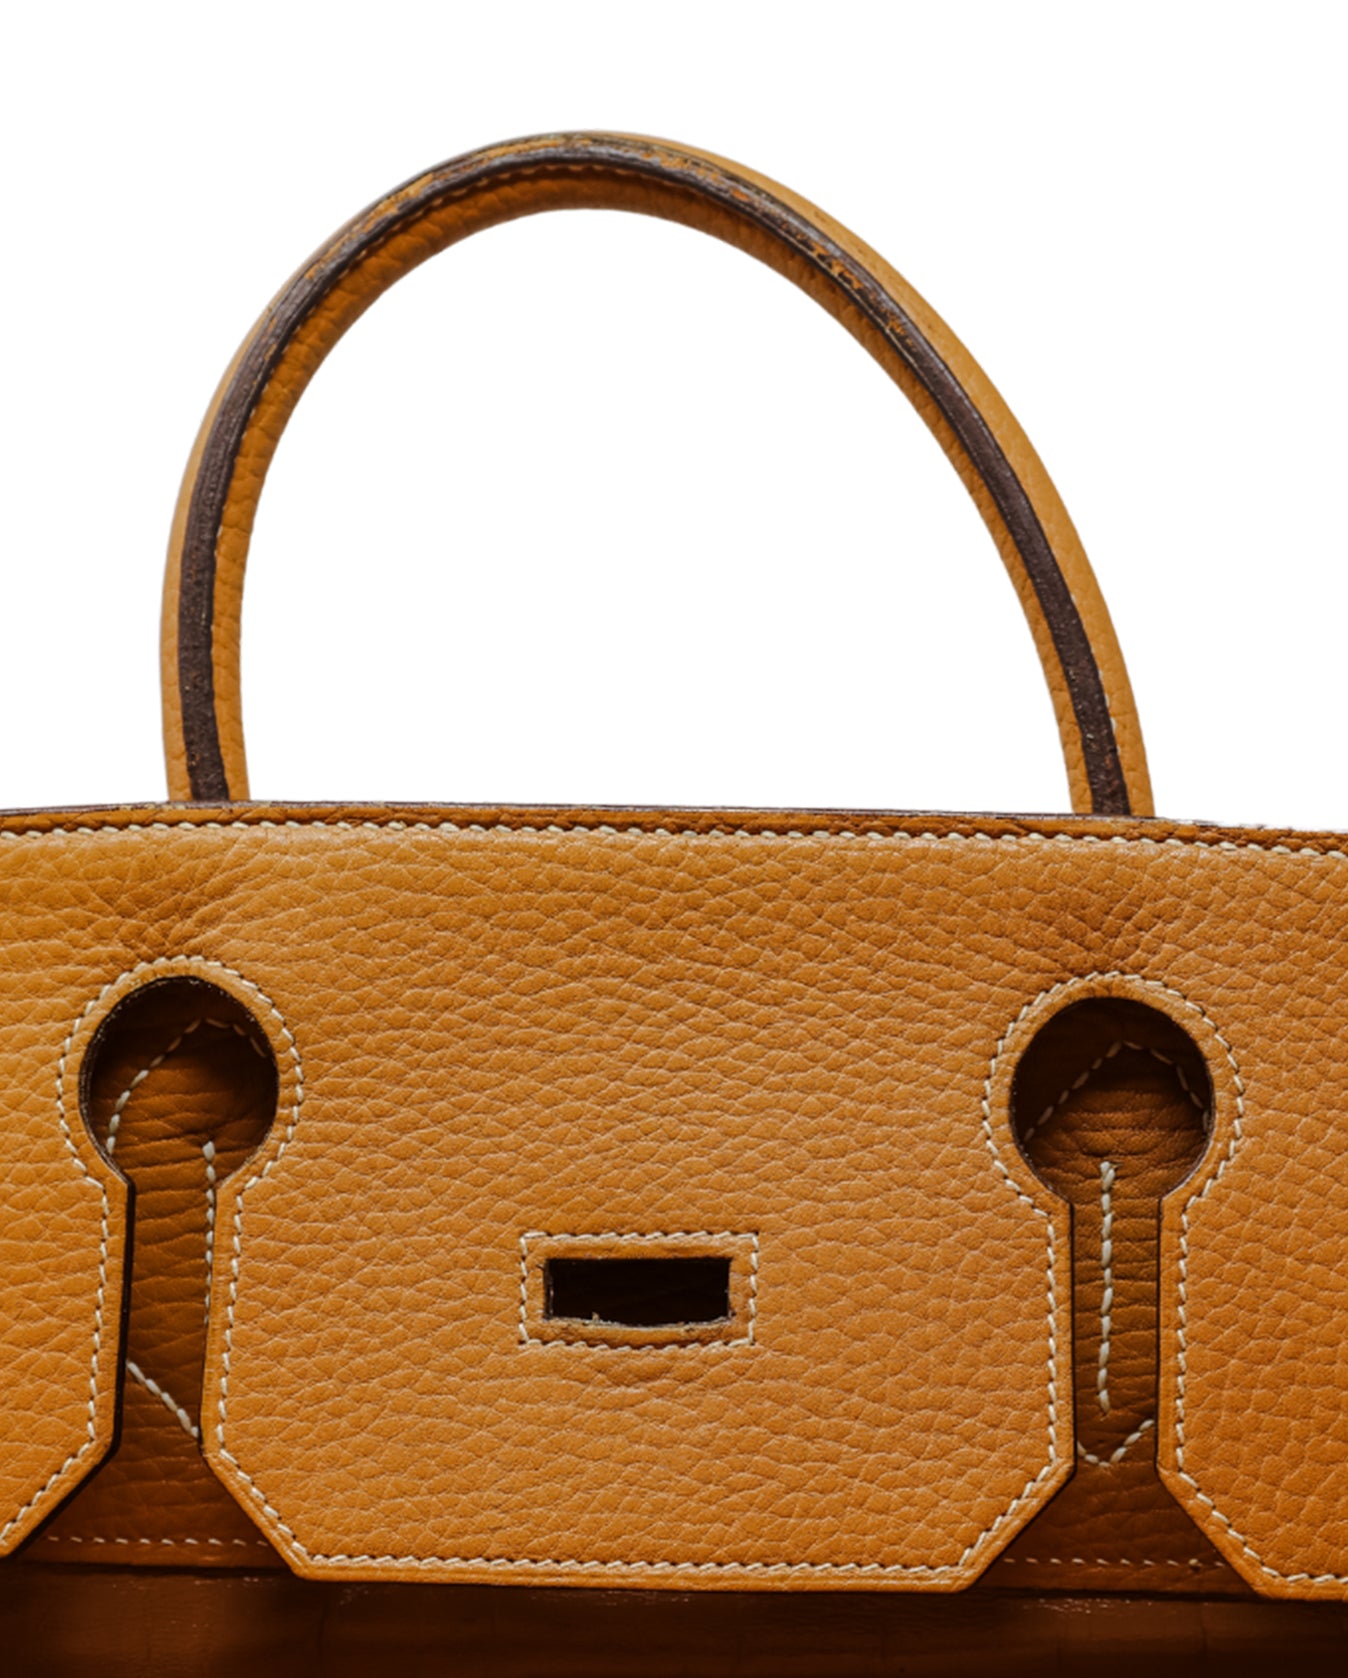 Hermes Birkin Shoulder Handbag in Brown Barenia Leather and Blue Denim